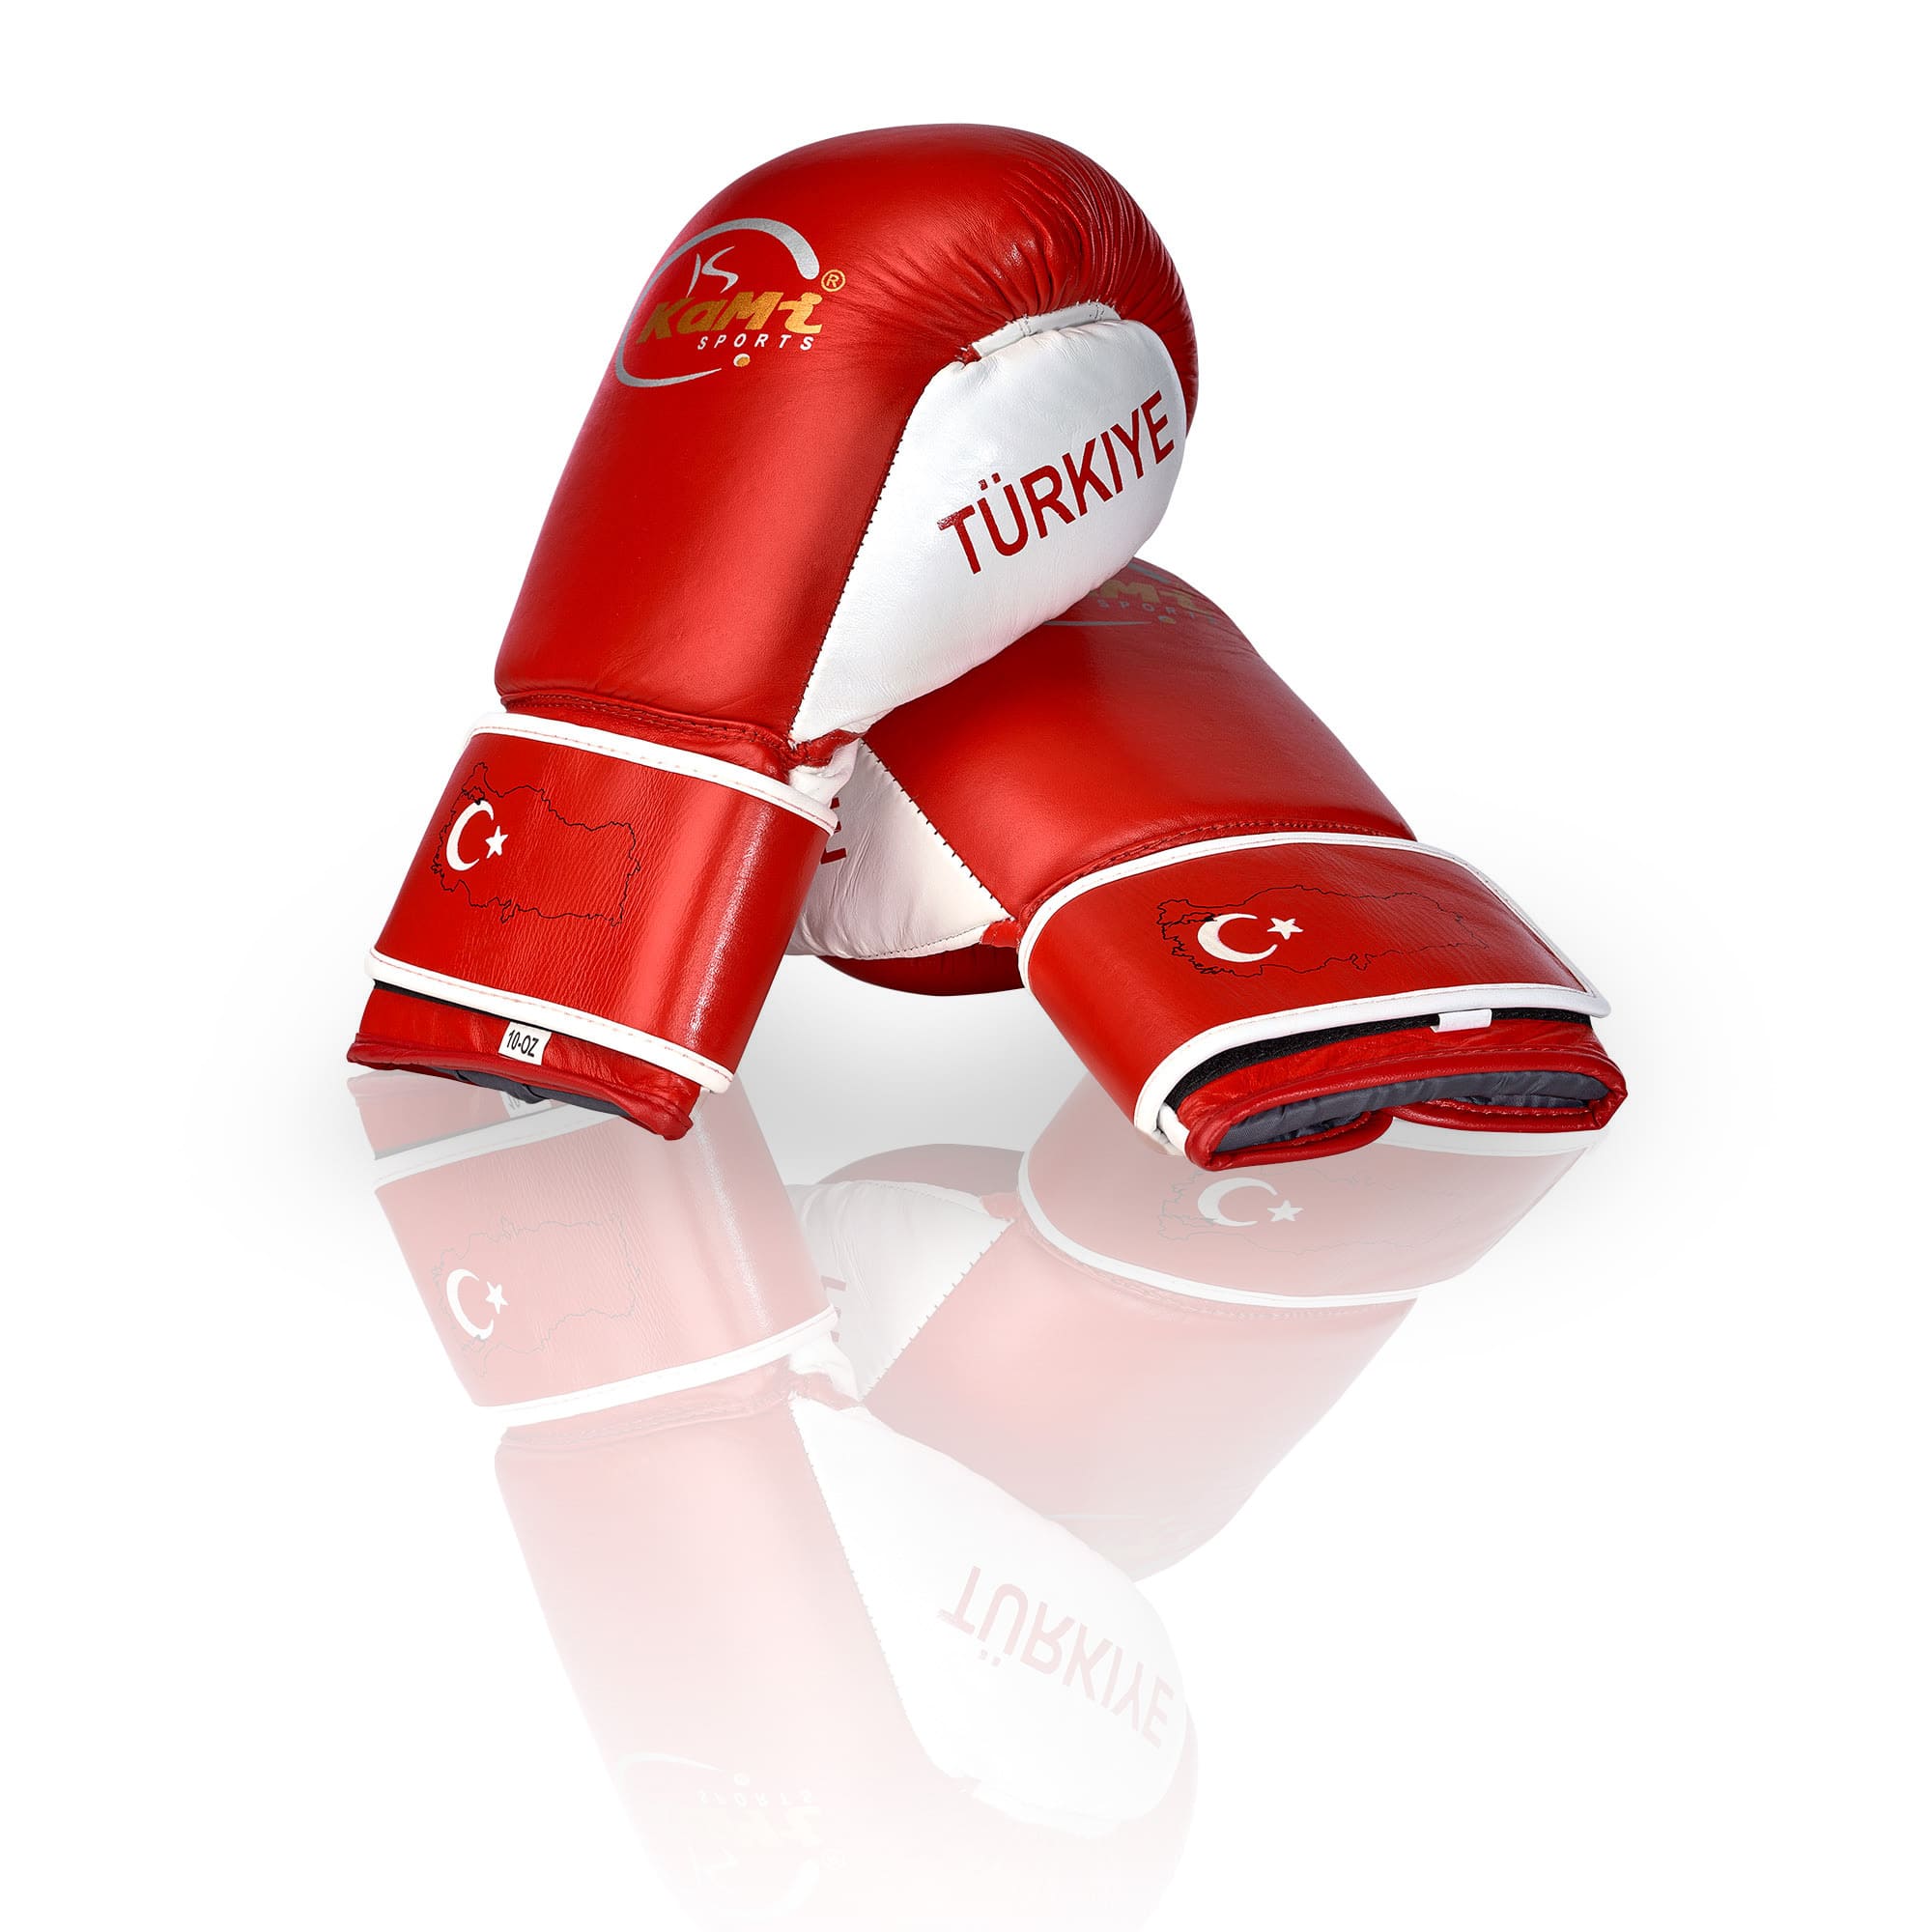 Premium Echtleder Boxhandschuhe mit türkischer Flagge, ideal für Training und Sparring, hoher Komfort, geeignet für alle Altersgruppen.